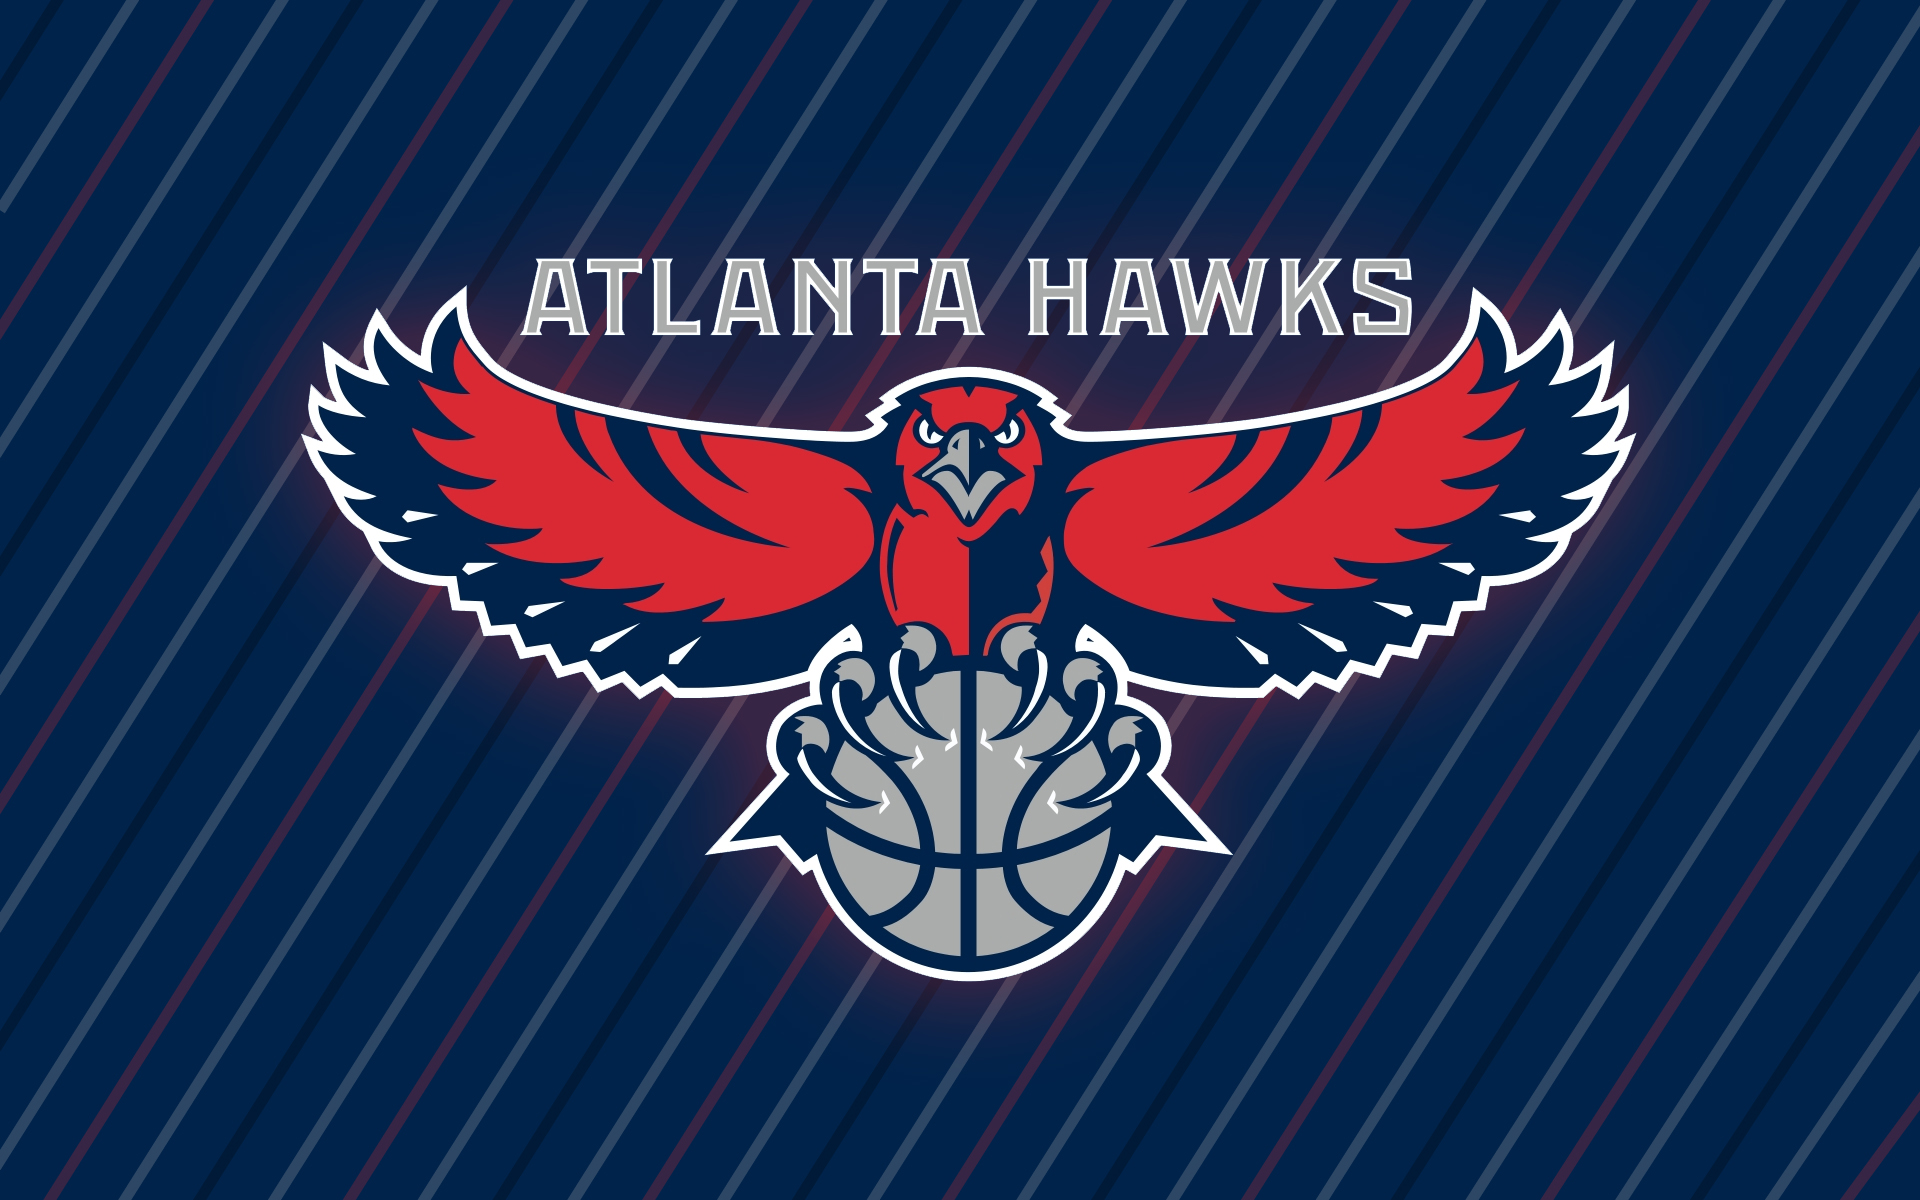 Atlanta Hawks Wallpaper From